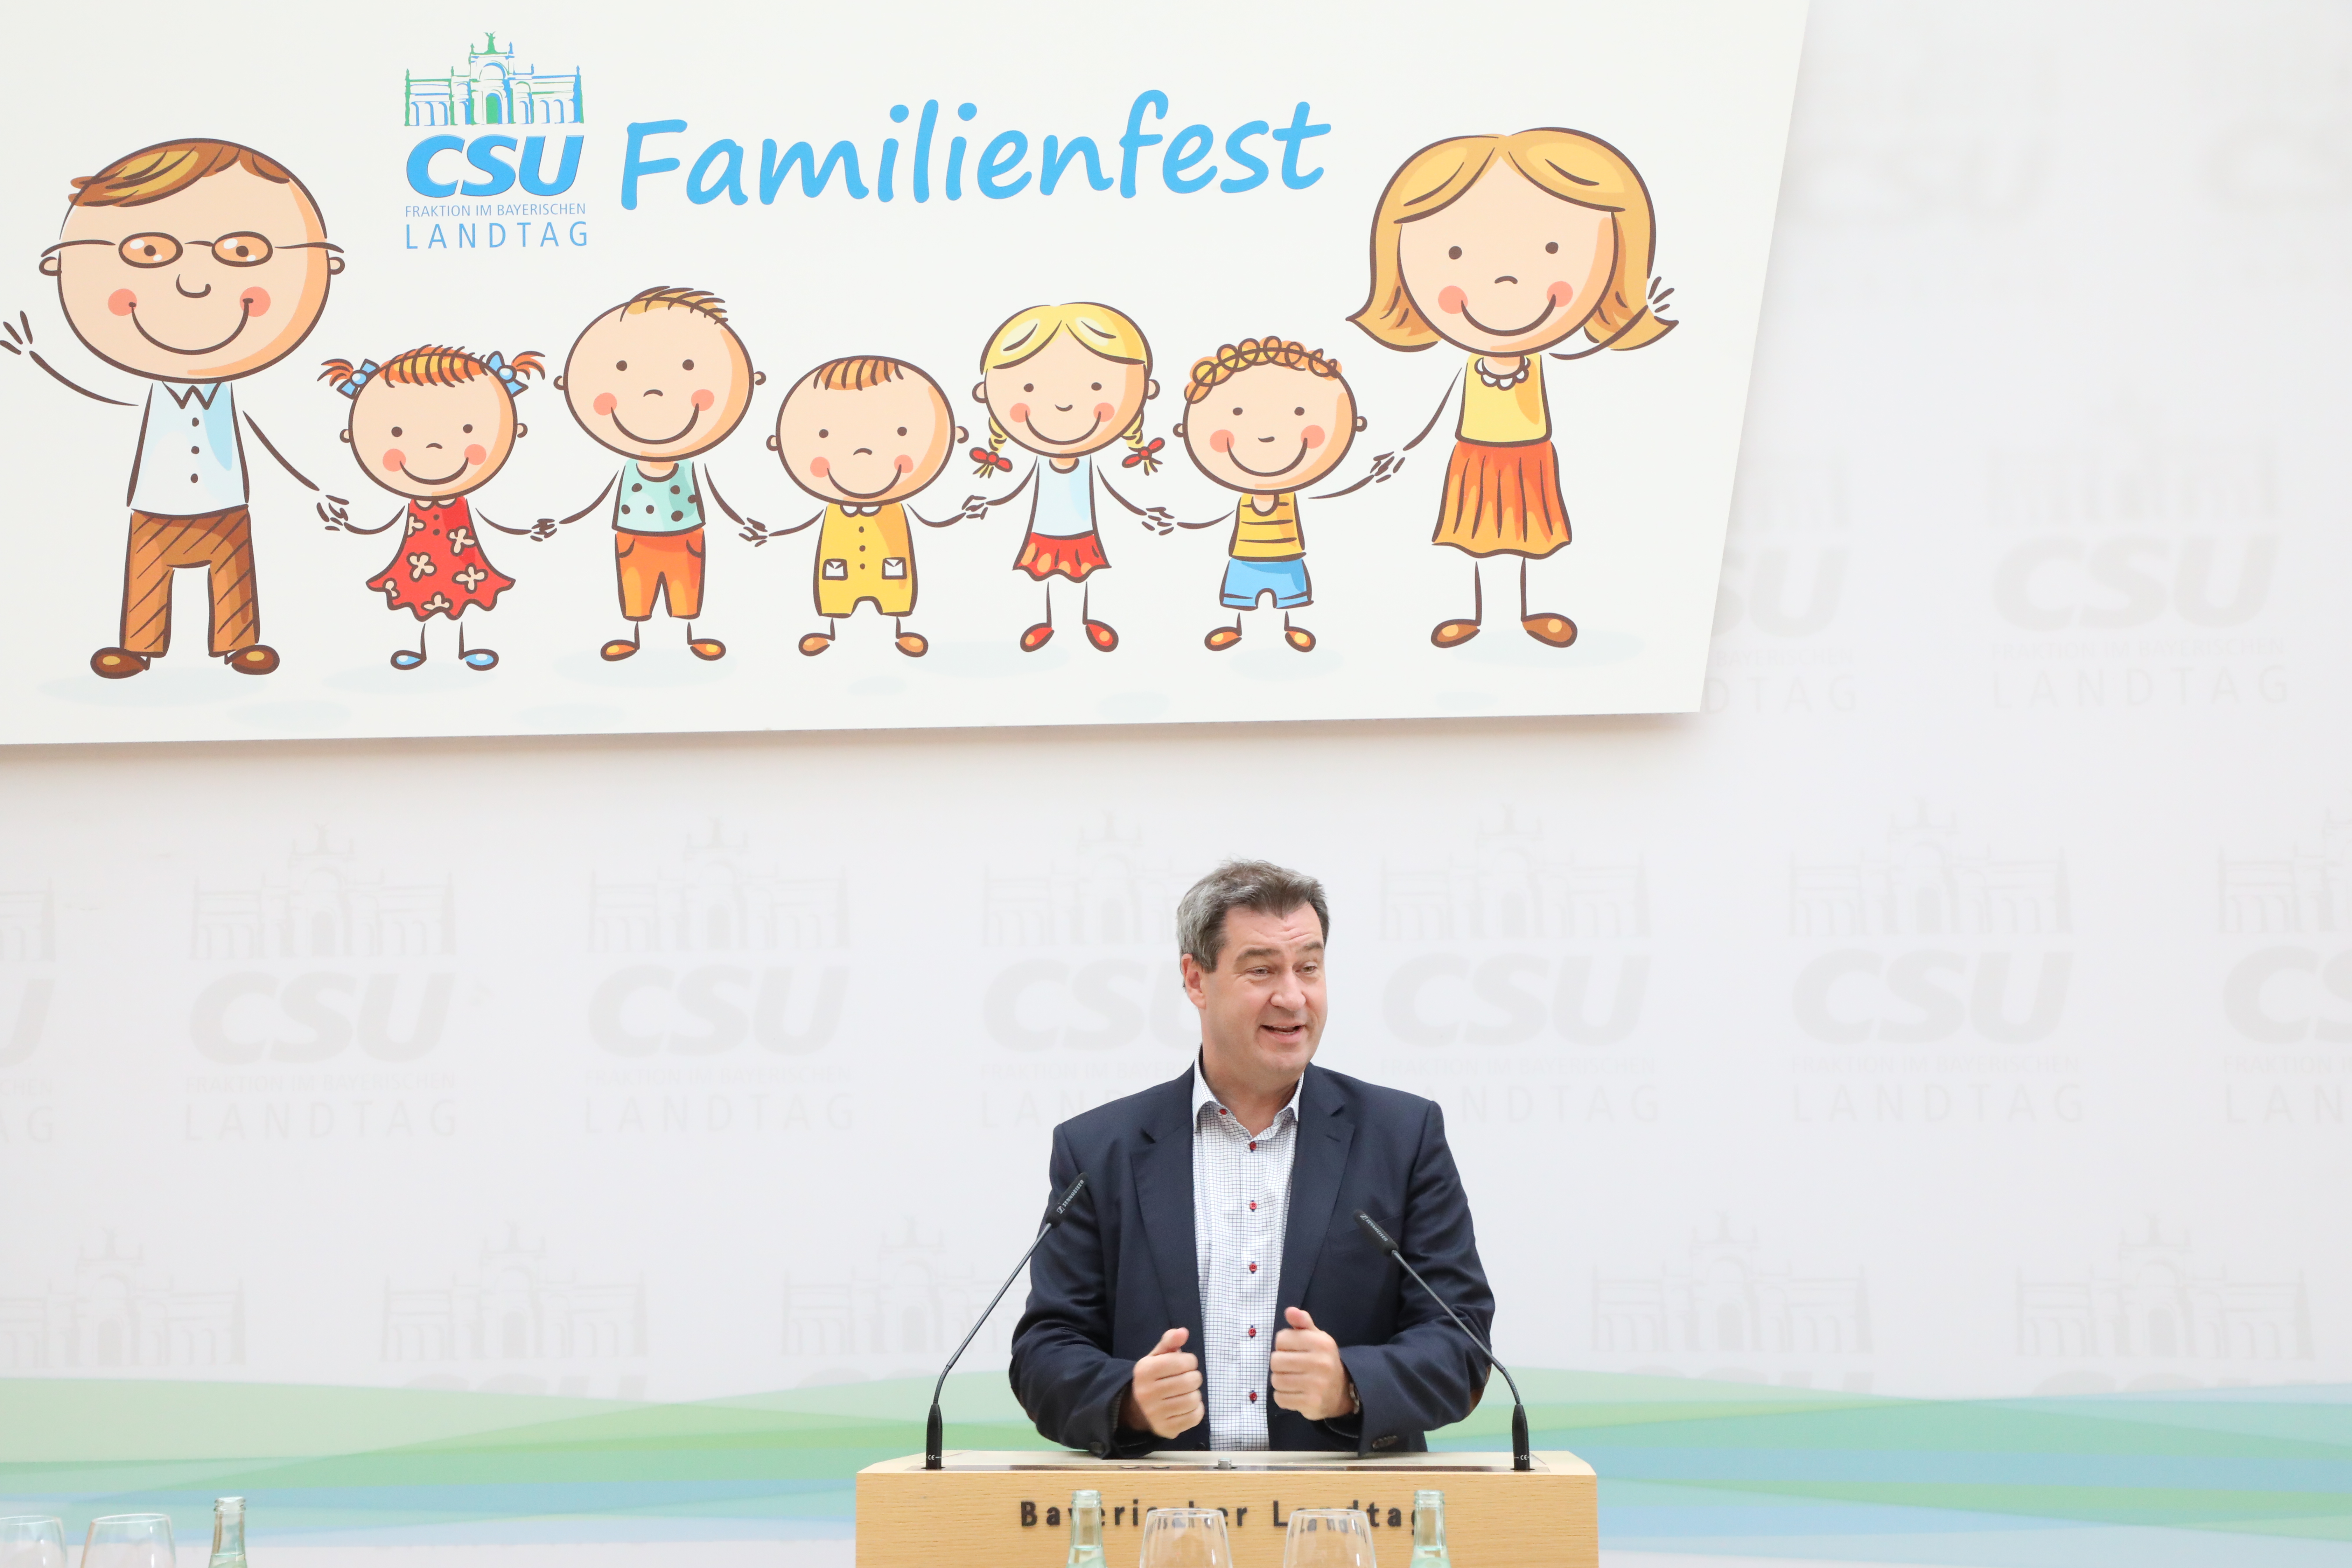 16.61.2018 - Familienfest 2018 - In seinem Grußwort betont Ministerpräsident Dr. Markus Söder: "Familien sind uns wichtig! Wir unterstützen sie tatkräftig in allen Lebenslagen." (Foto: CSU-Fraktion)